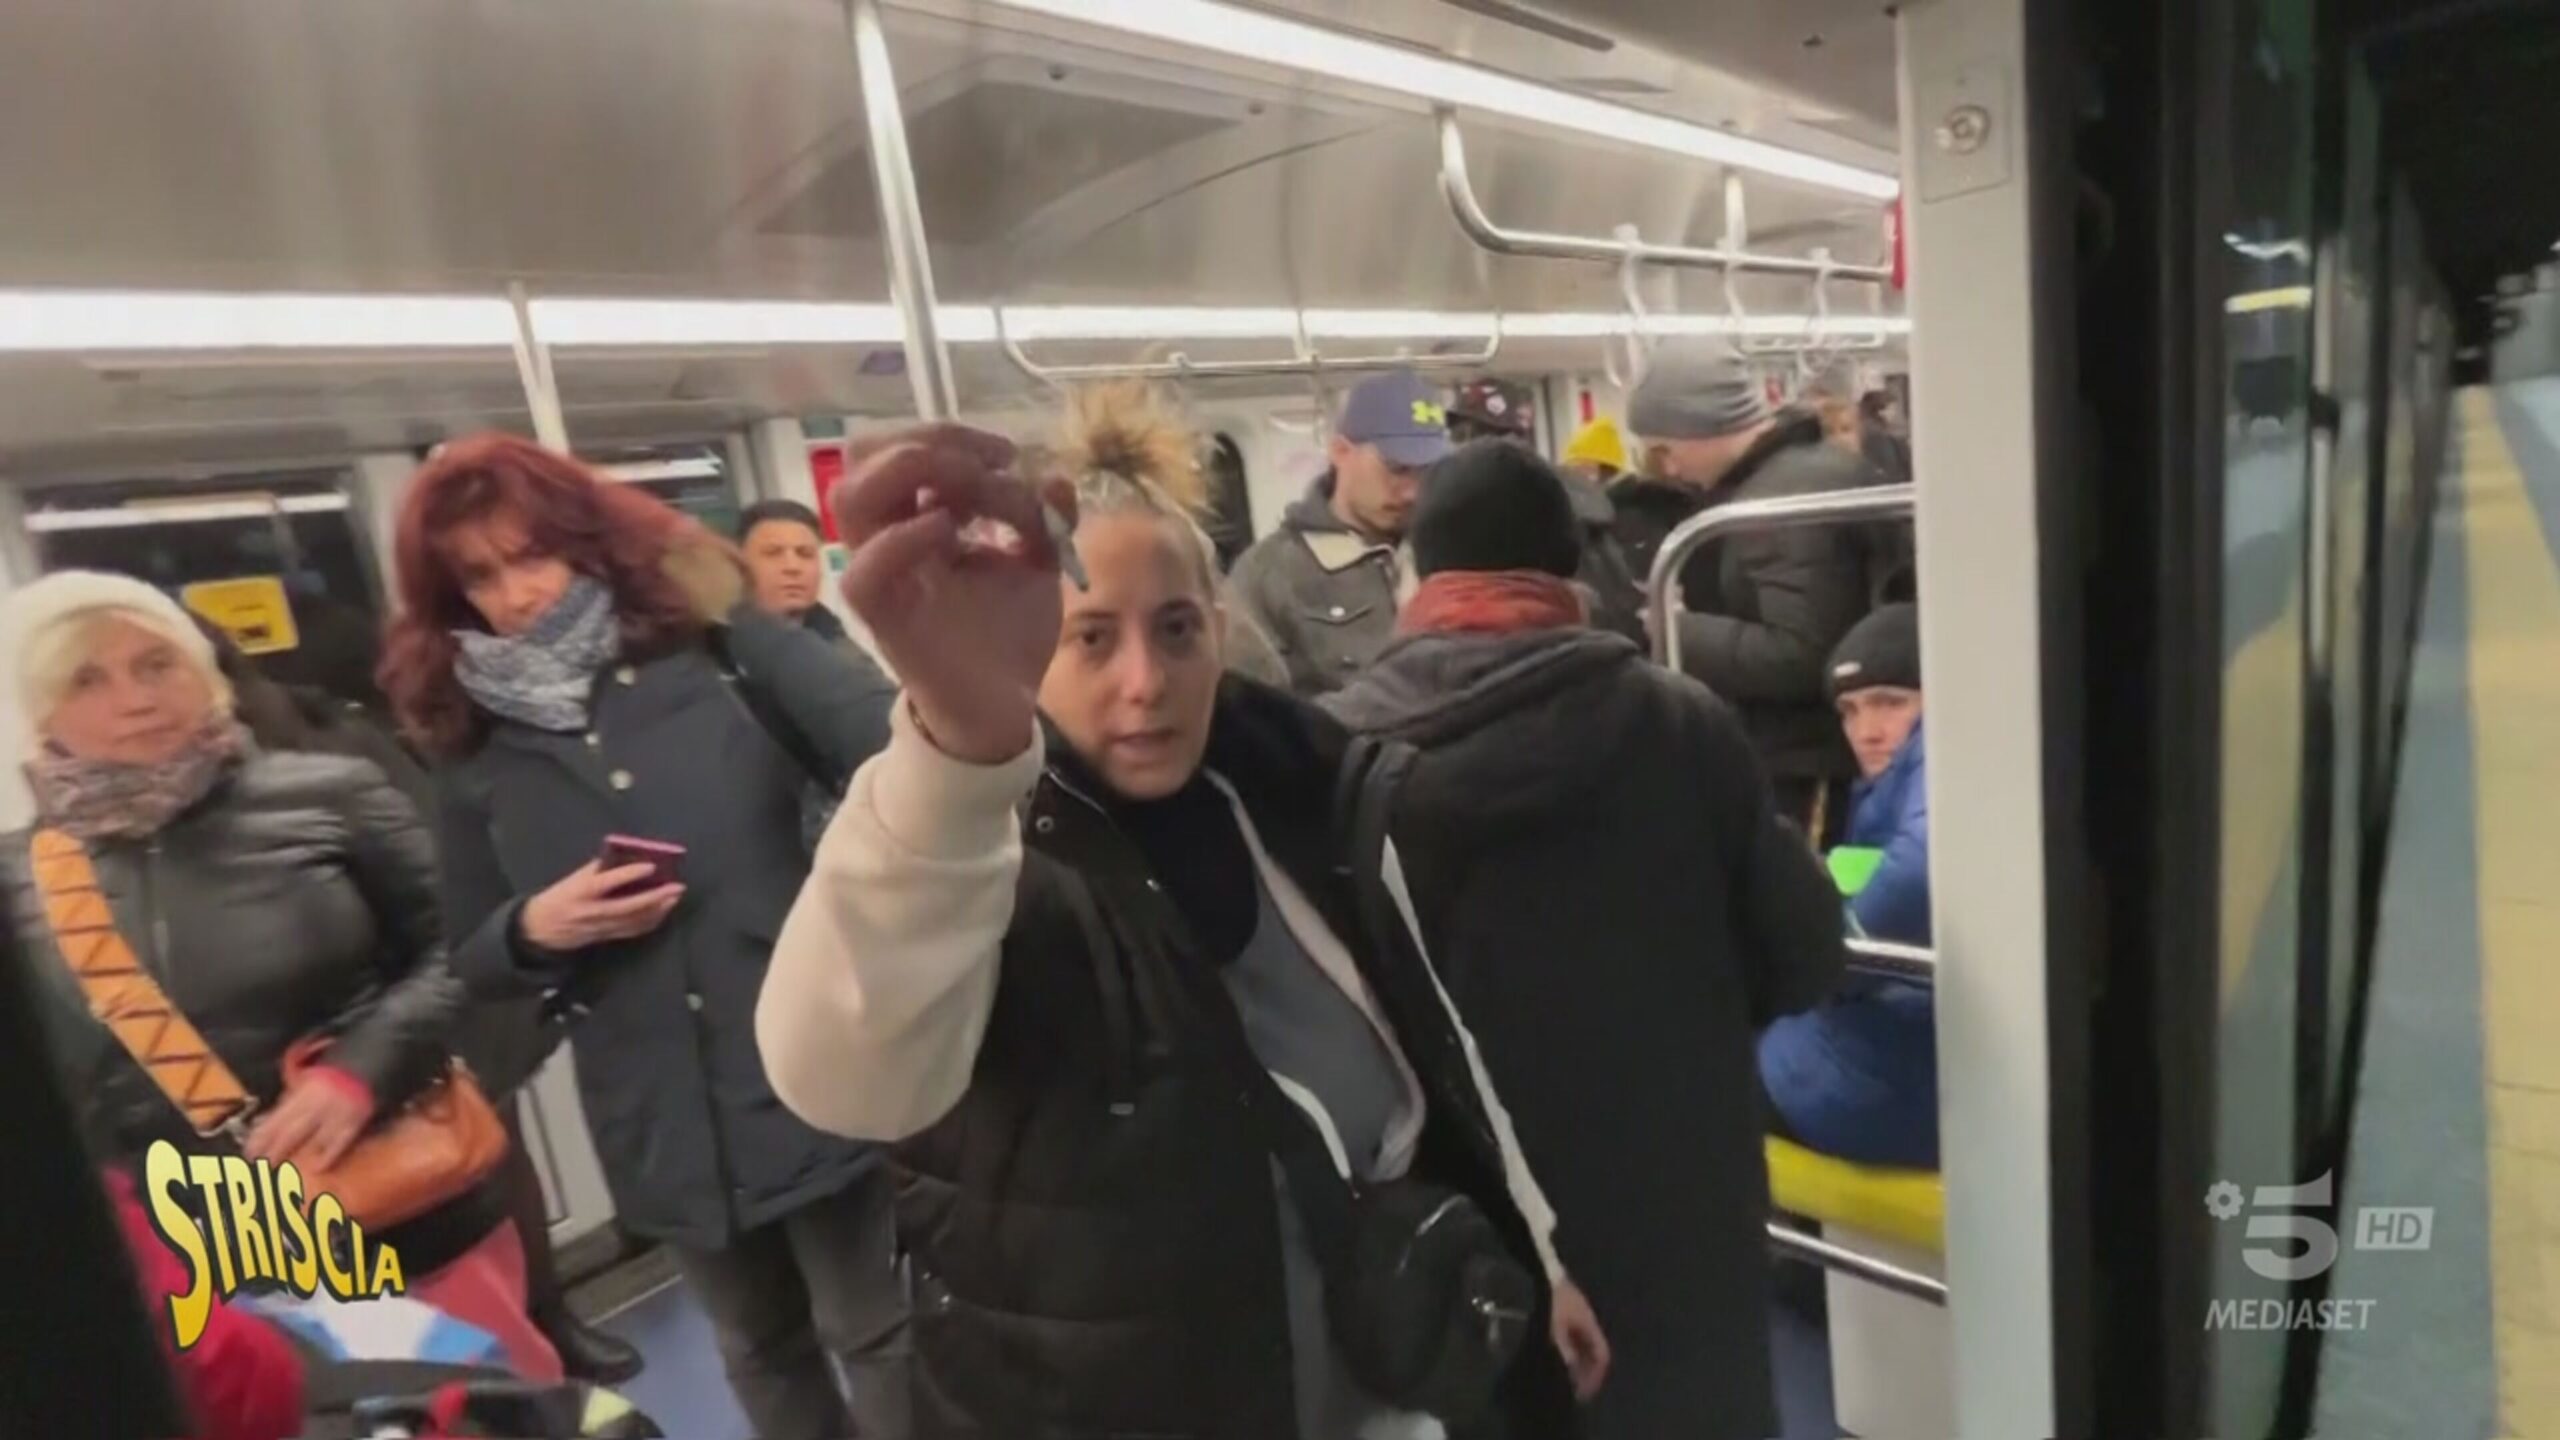 Milano reagisce: la borseggiatrice spinge, minaccia e blocca la metro